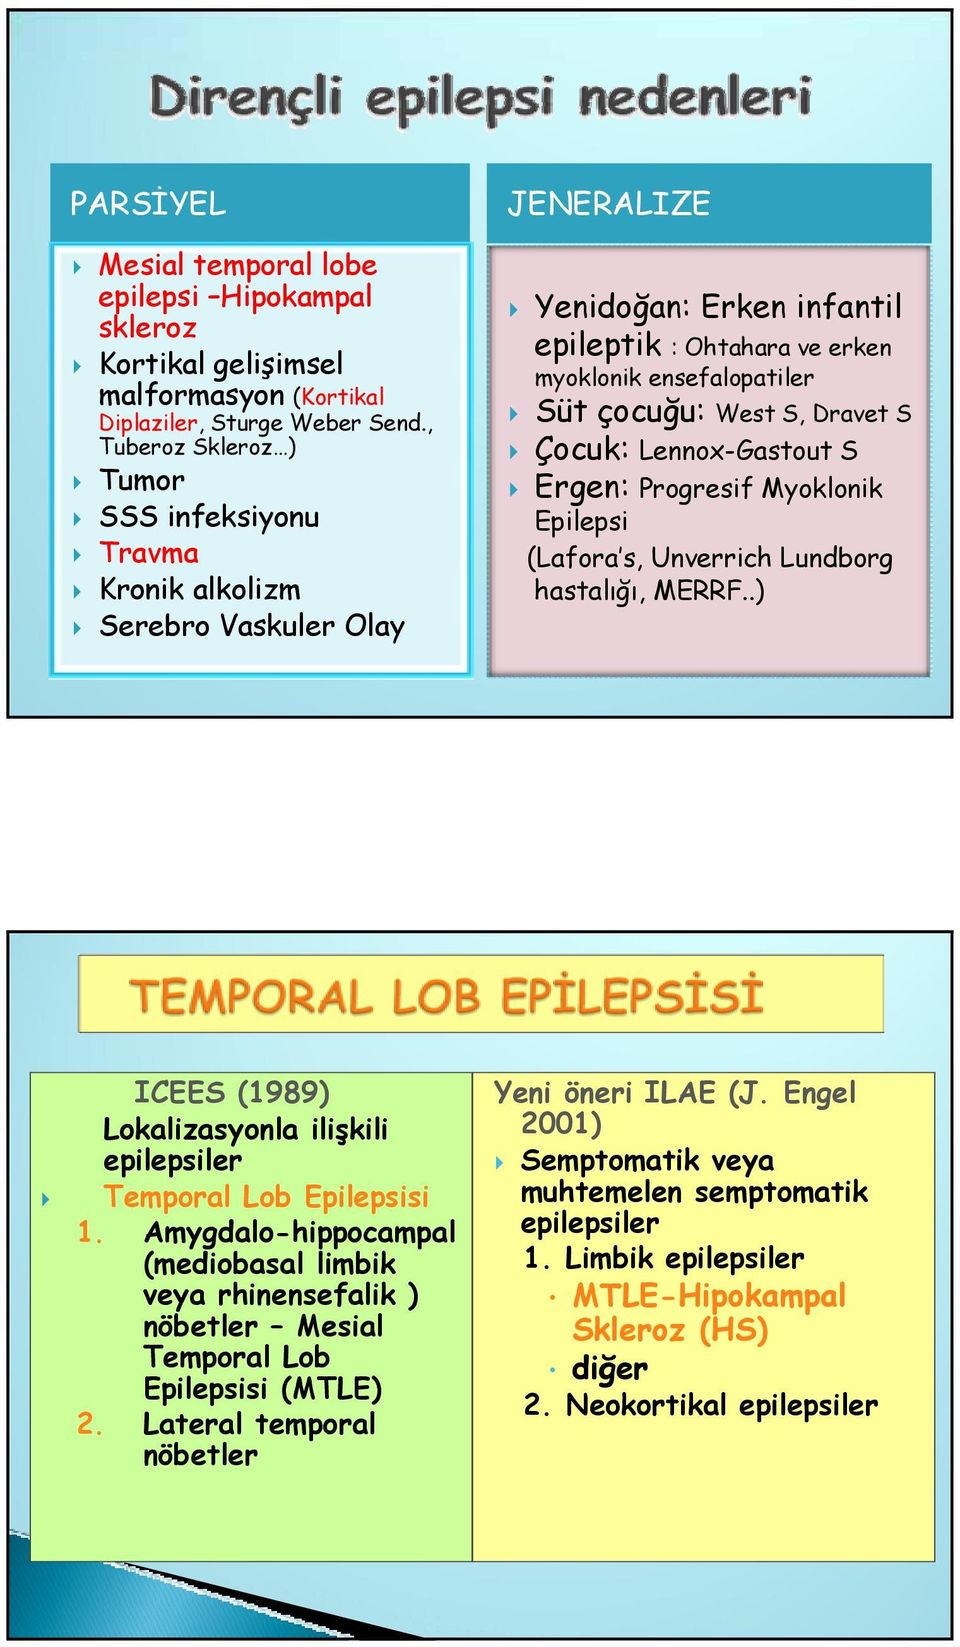 Çocuk: Lennox-Gastout S Ergen: Progresif Myoklonik Epilepsi (Lafora s, Unverrich Lundborg hastalığı, MERRF..) ICEES (1989) Lokalizasyonla ilişkili epilepsiler Temporal Lob Epilepsisi 1.